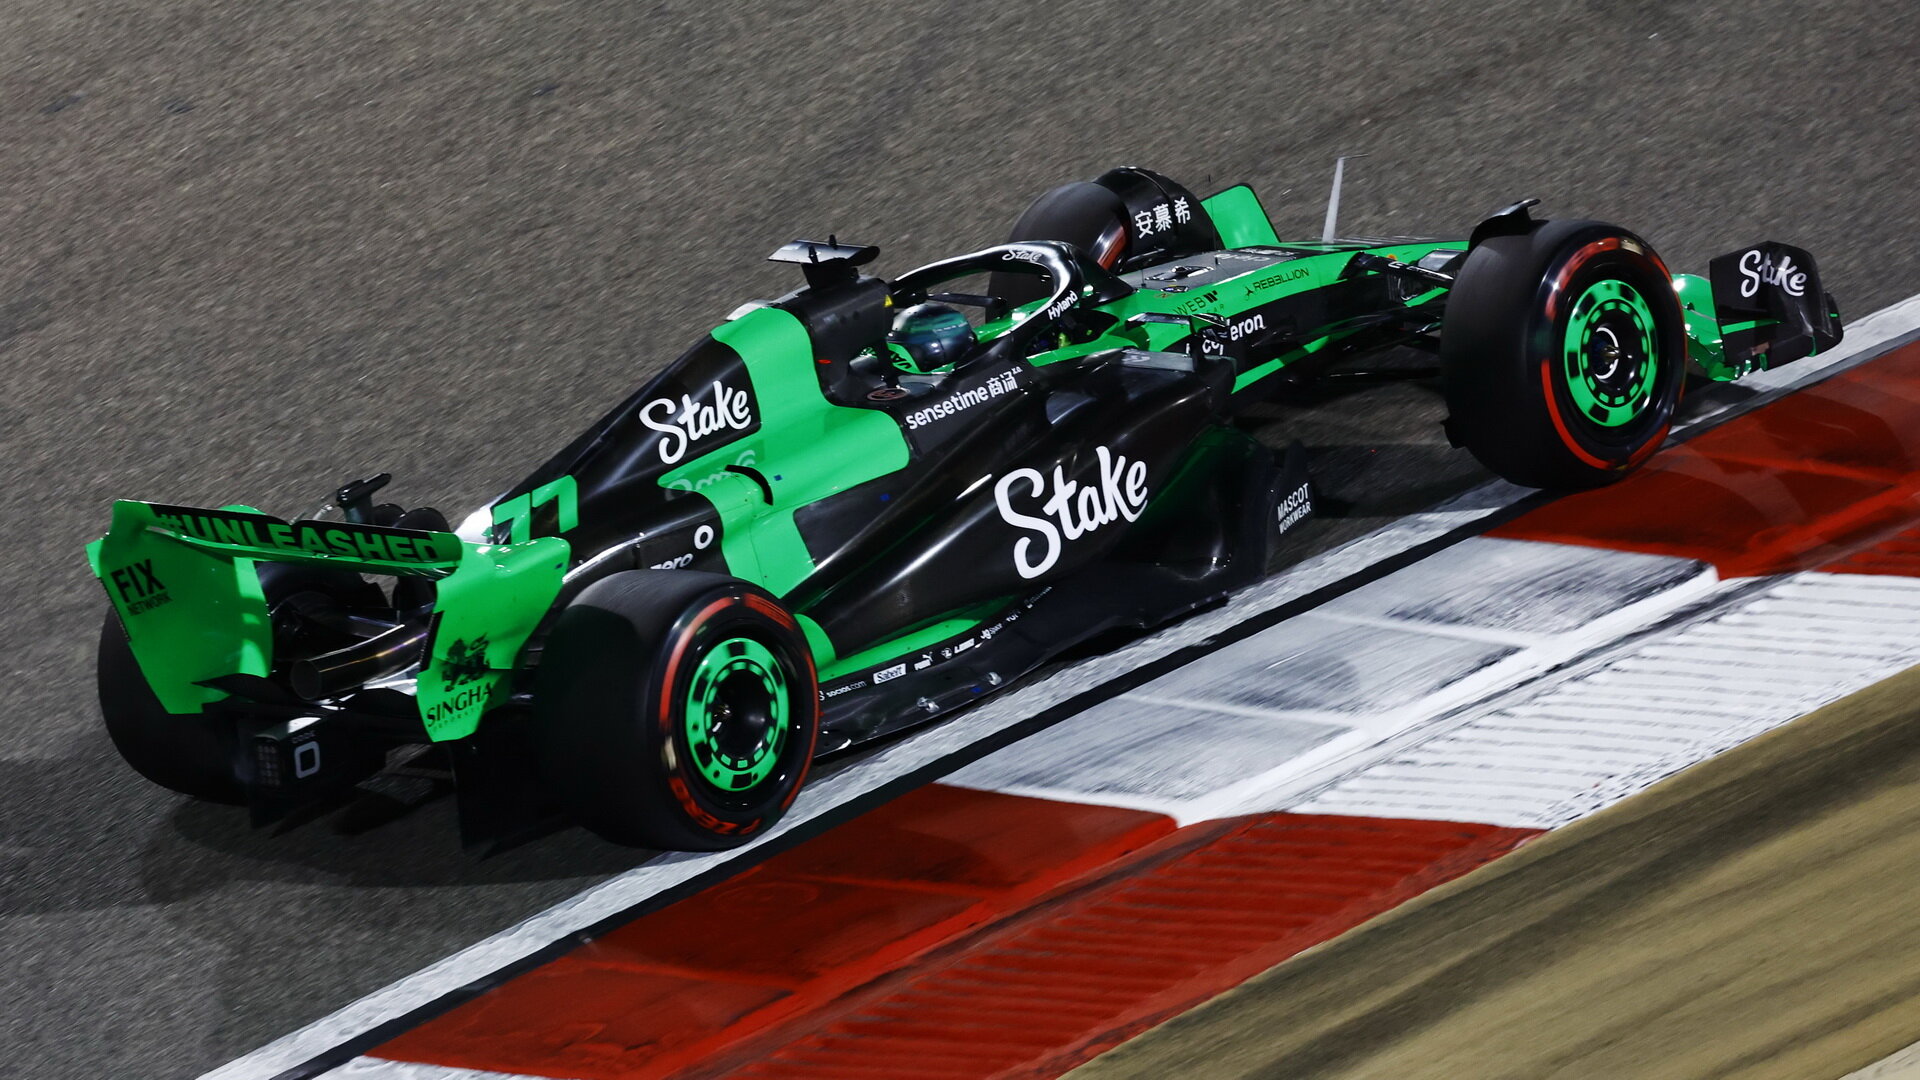 Valtteri Bottas v závodě v Bahrajnu